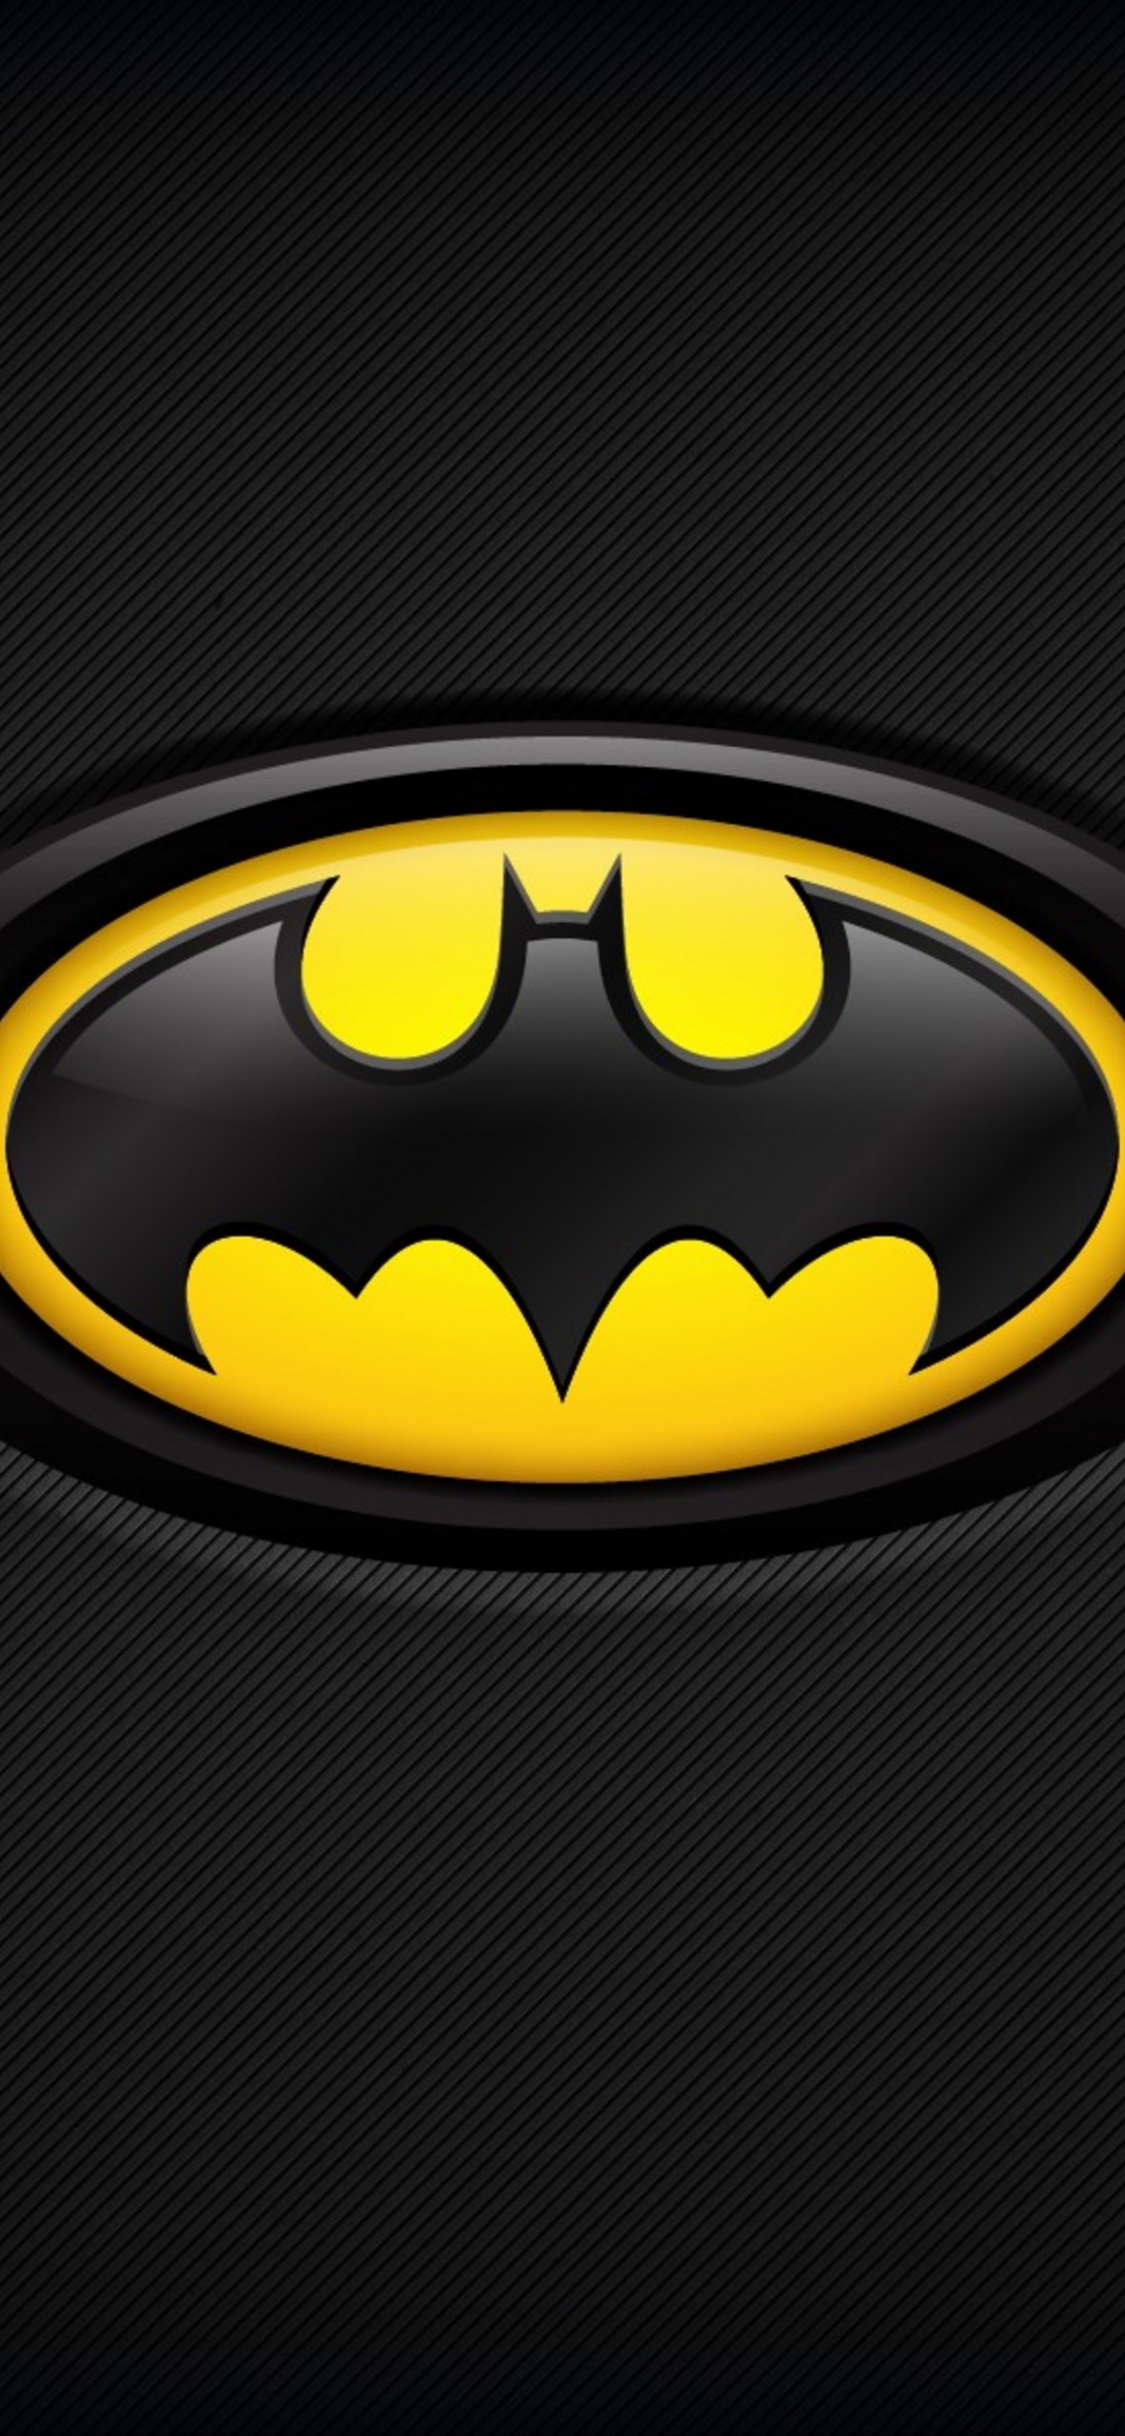 Schwarz-gelbes Batman-Logo. Wallpaper in 1125x2436 Resolution